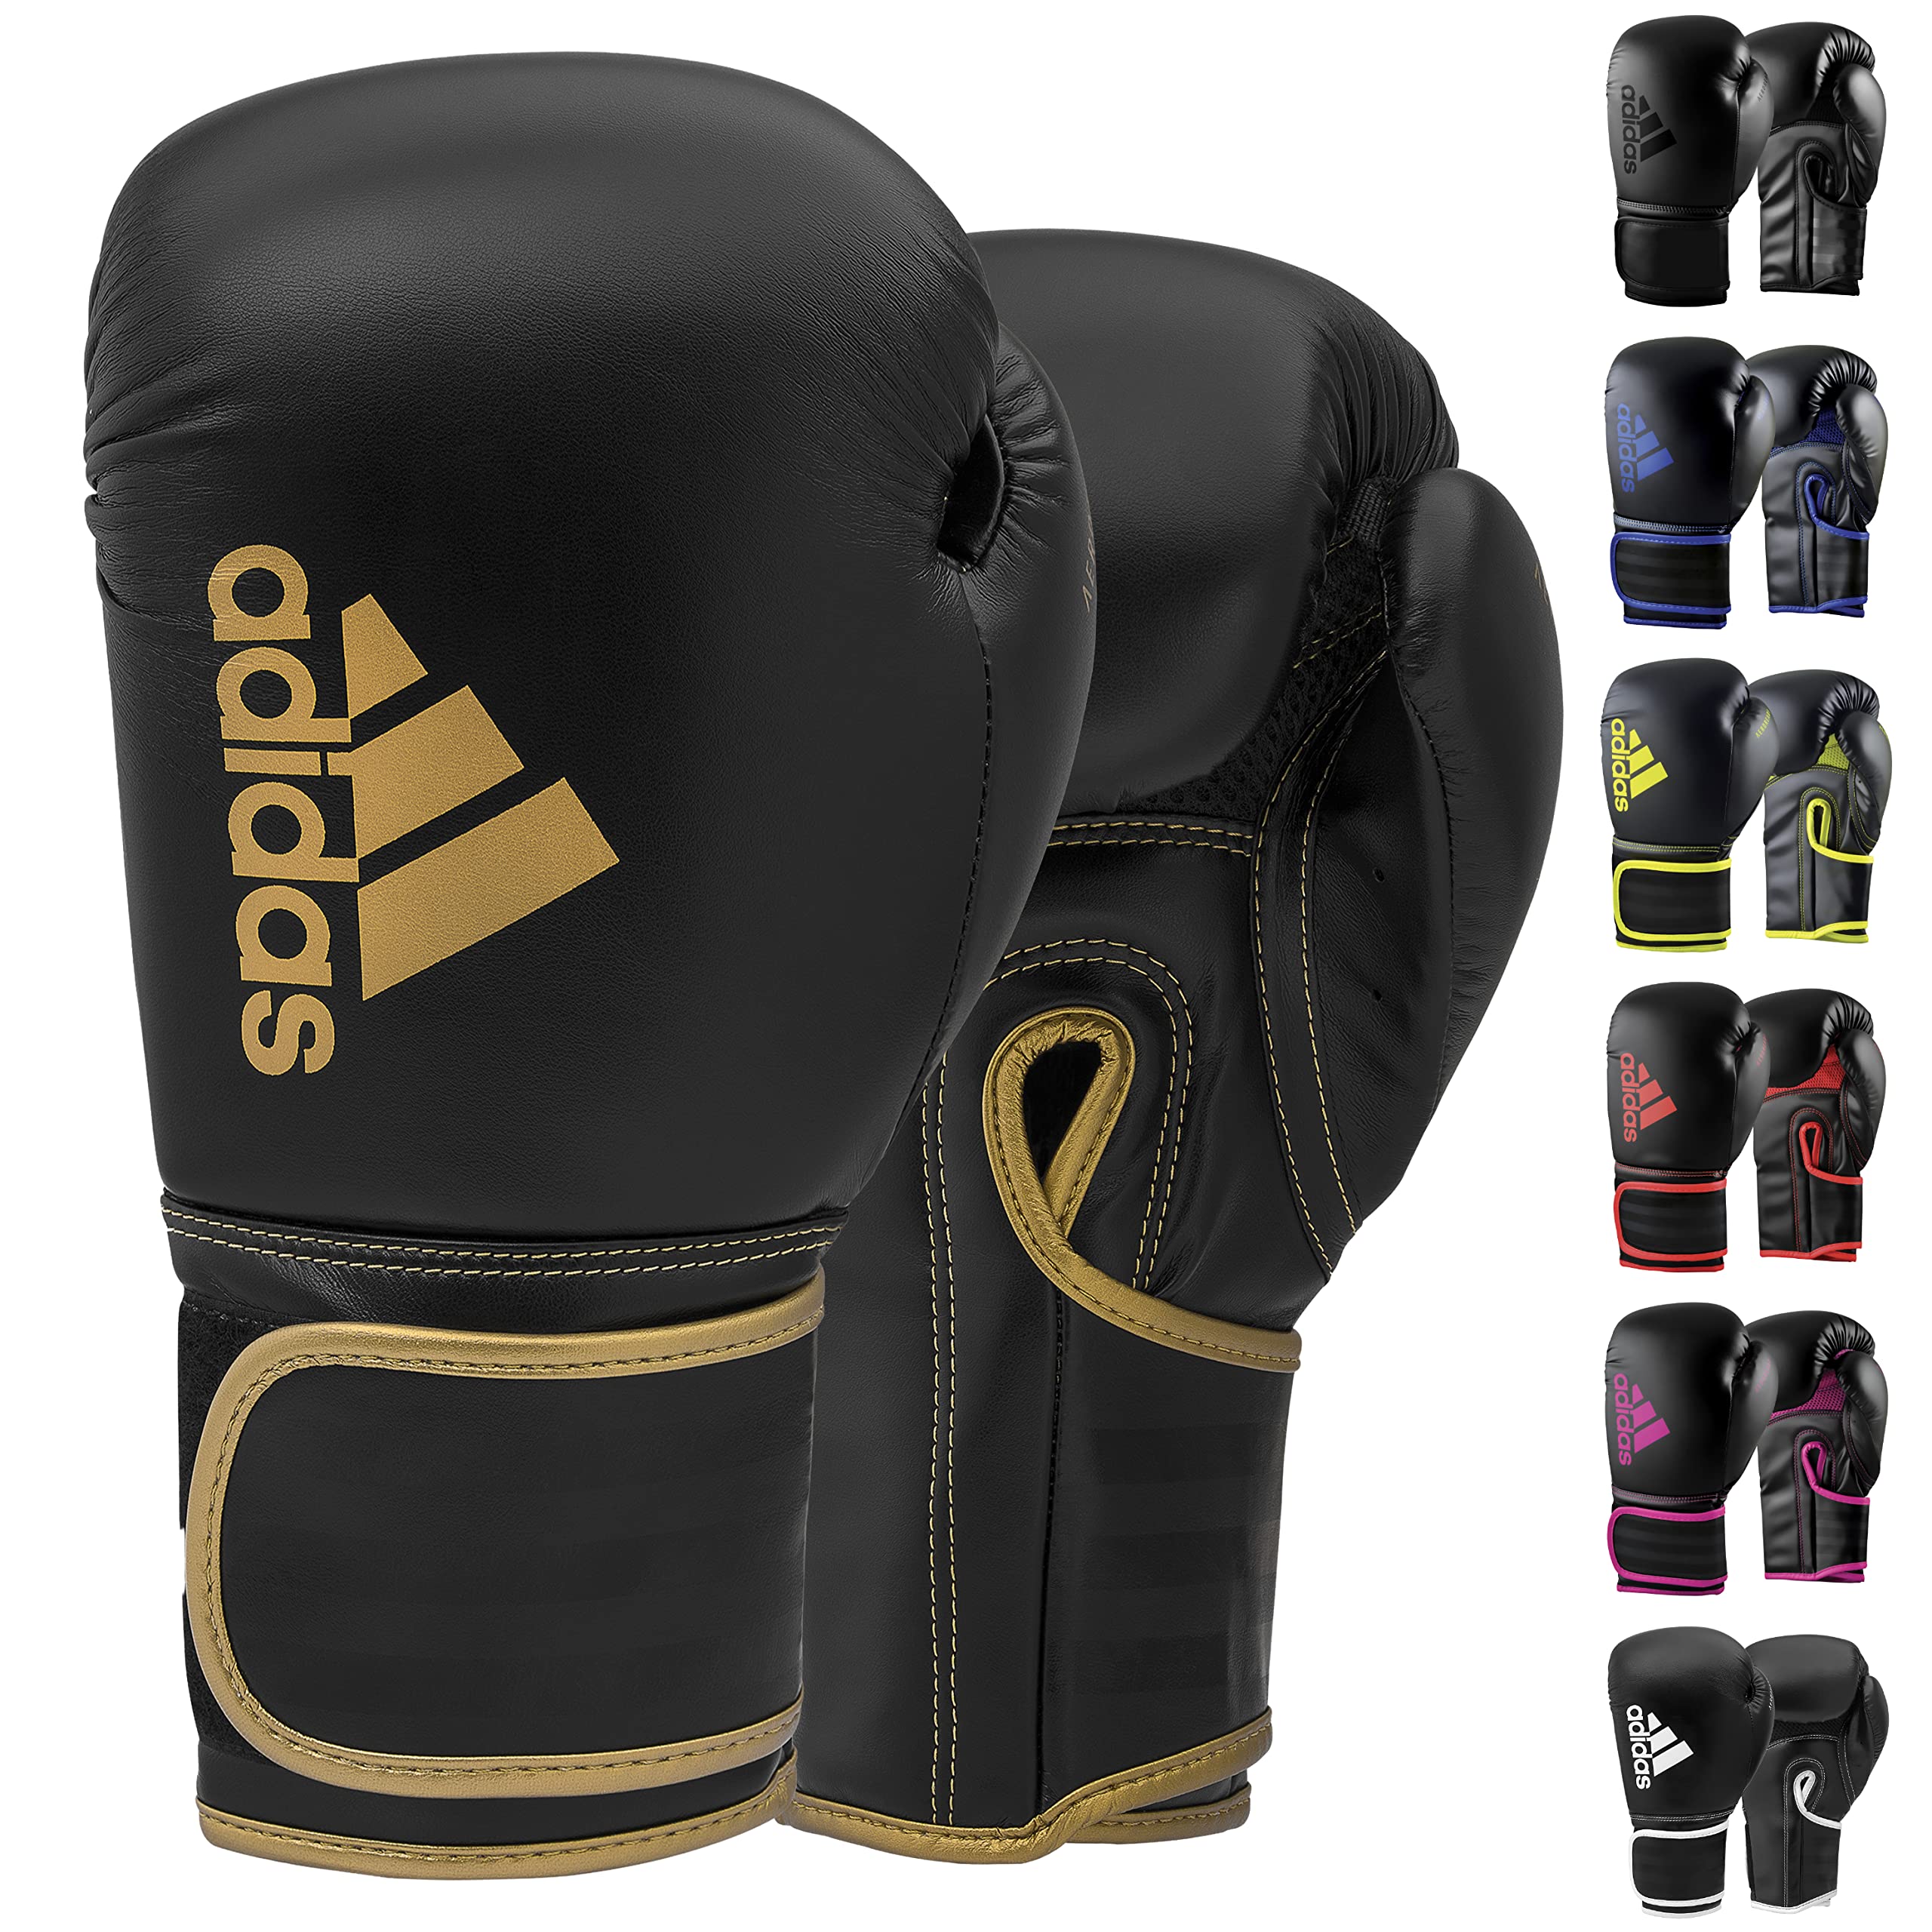 Adidas Boxing Gloves - Hybrid 80 - for Boxing, Kickboxing, MMA, Bag,  Training & Fitness - Boxing Gloves for Men, Women & Kids Black/Gold 12oz